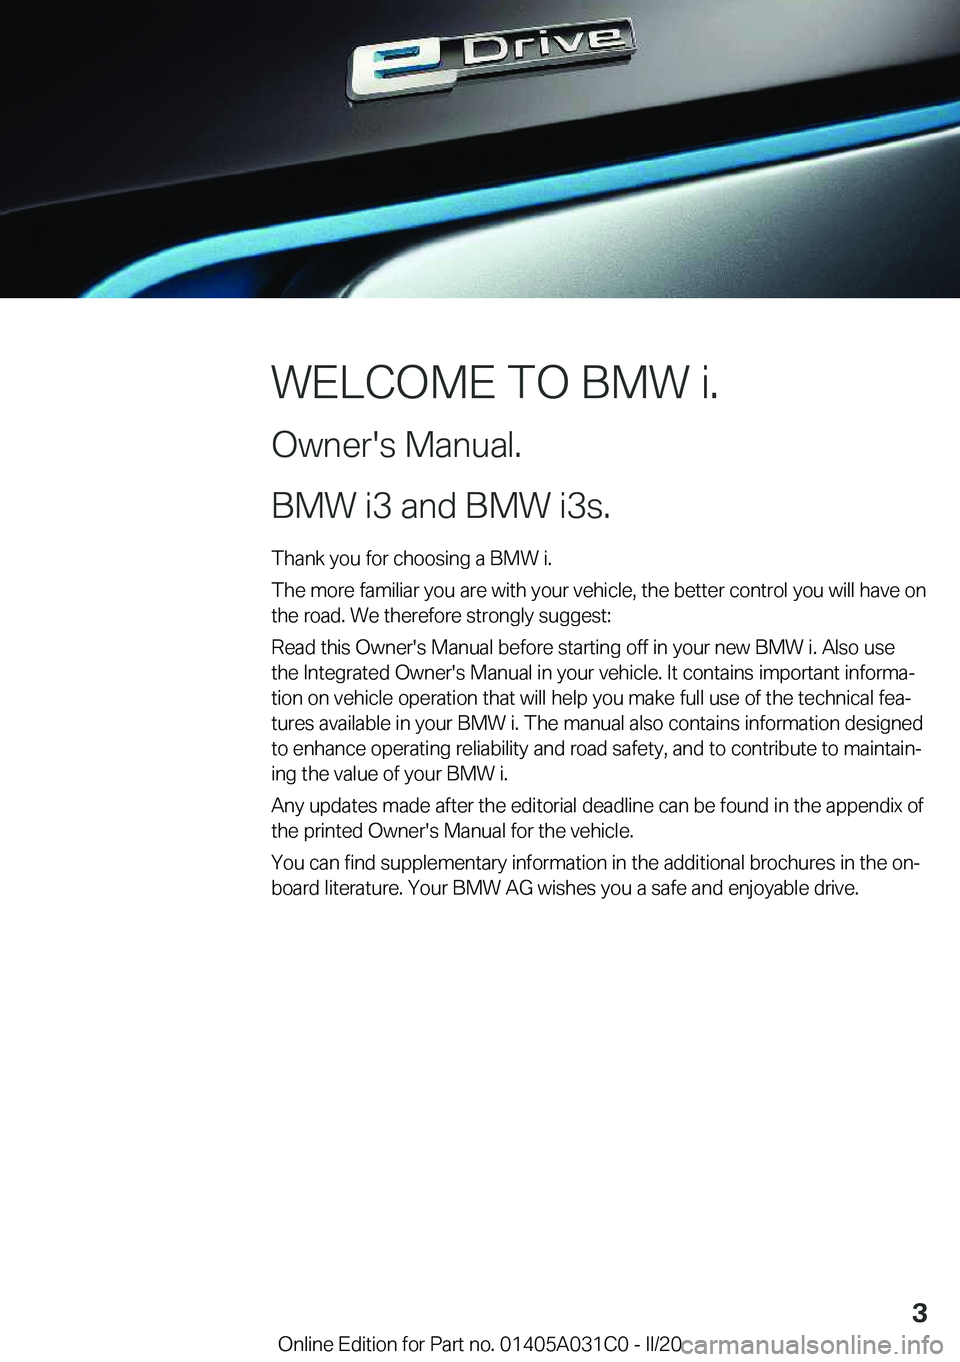 BMW I3 2020  Owners Manual �W�E�L�C�O�M�E��T�O��B�M�W��i�.
�O�w�n�e�r�'�s��M�a�n�u�a�l�.
�B�M�W��i�3��a�n�d��B�M�W��i�3�s�.� �T�h�a�n�k��y�o�u��f�o�r��c�h�o�o�s�i�n�g��a��B�M�W��i�.
�T�h�e��m�o�r�e��f�a�m�i